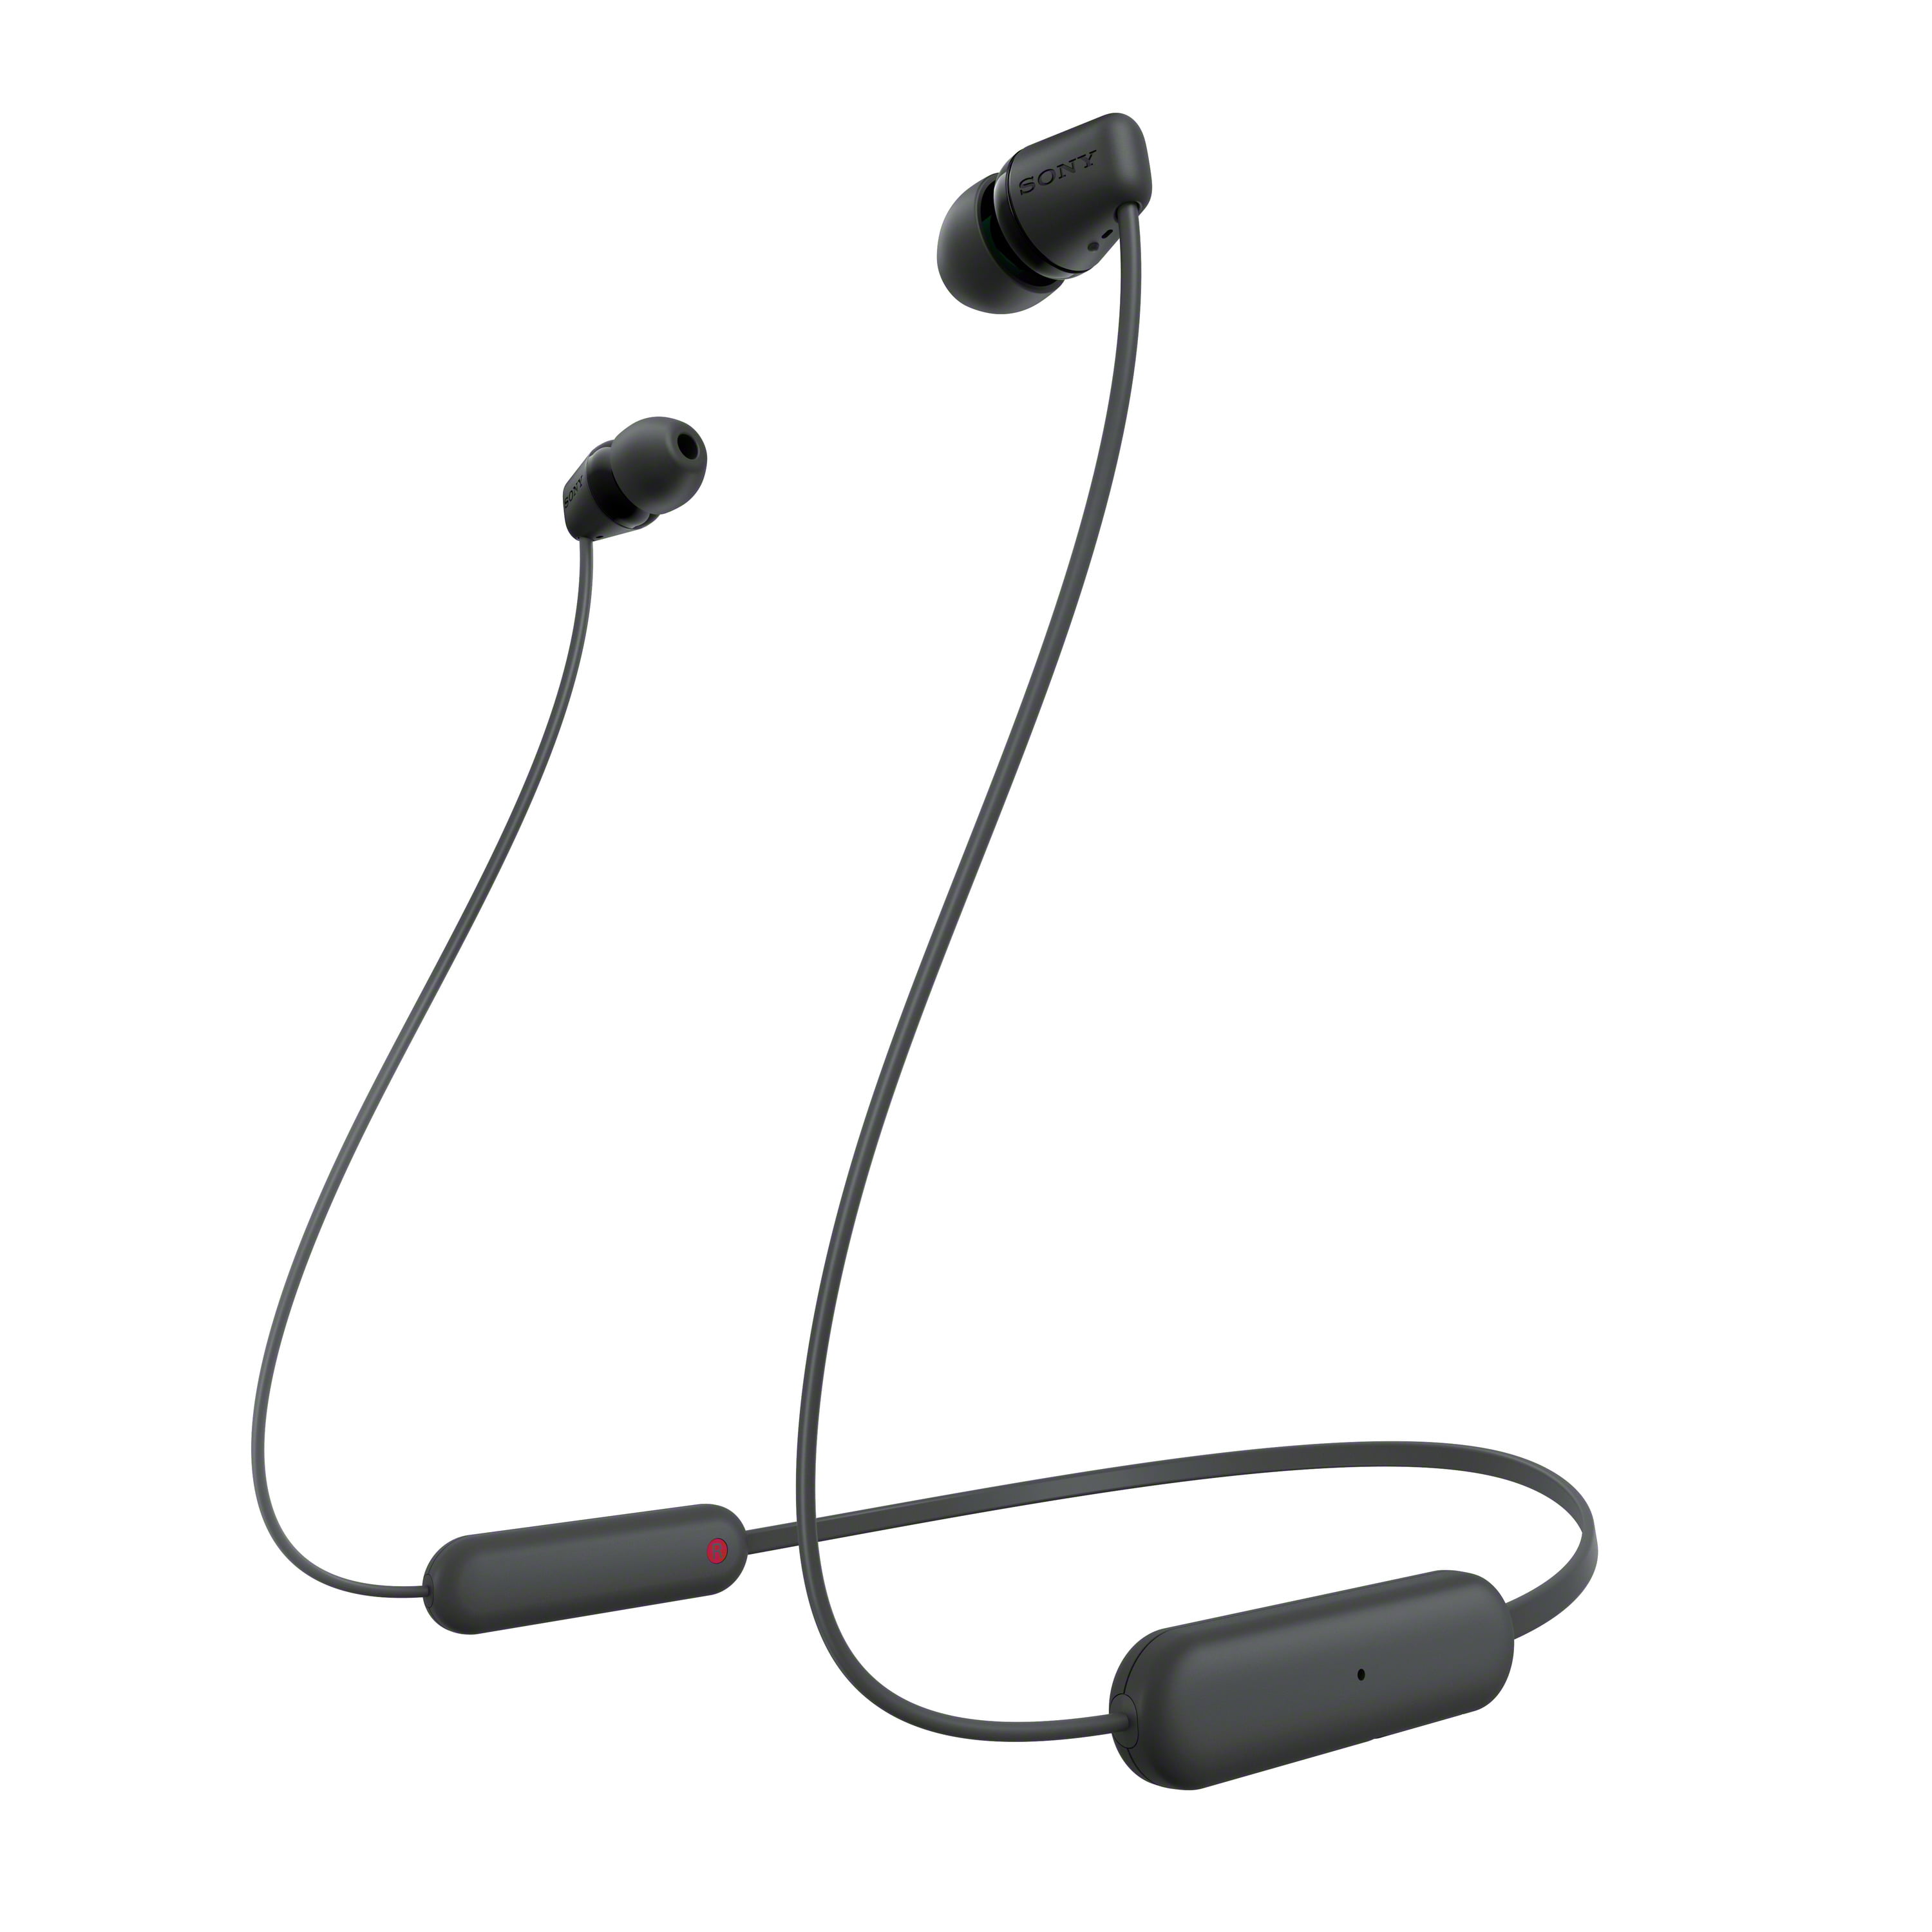 Sony Wireless Bluetooth In-ear Headphones, Black